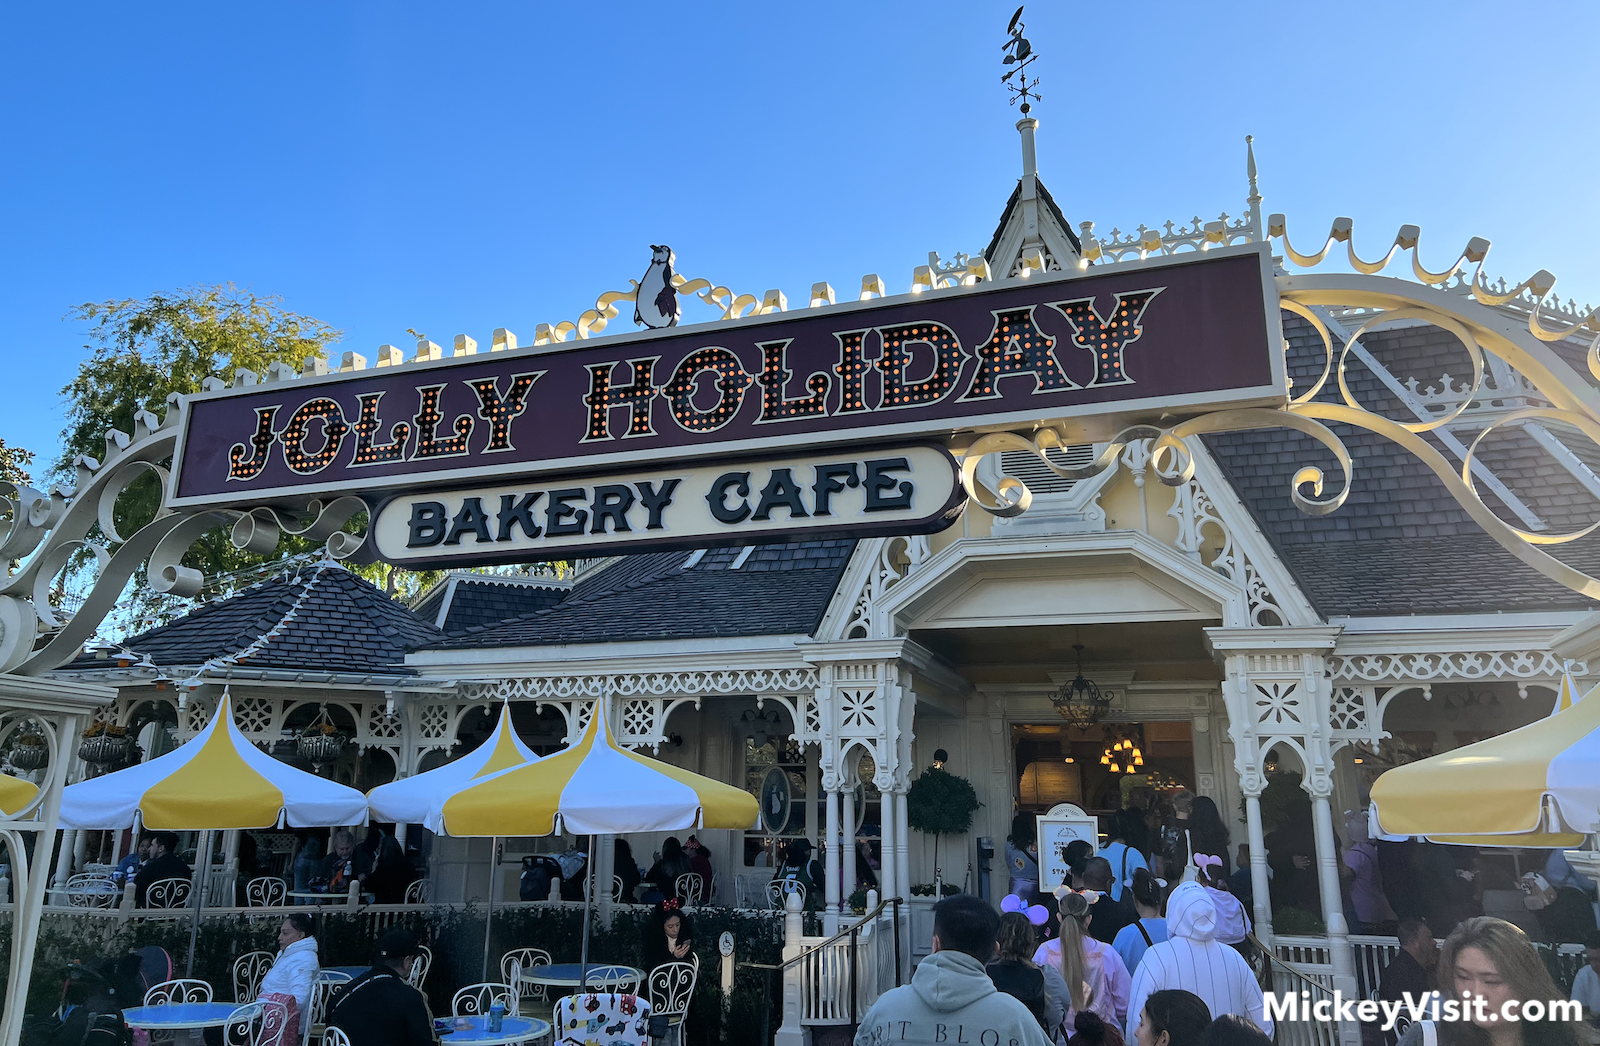 Jolly Holiday Bakery Cafe